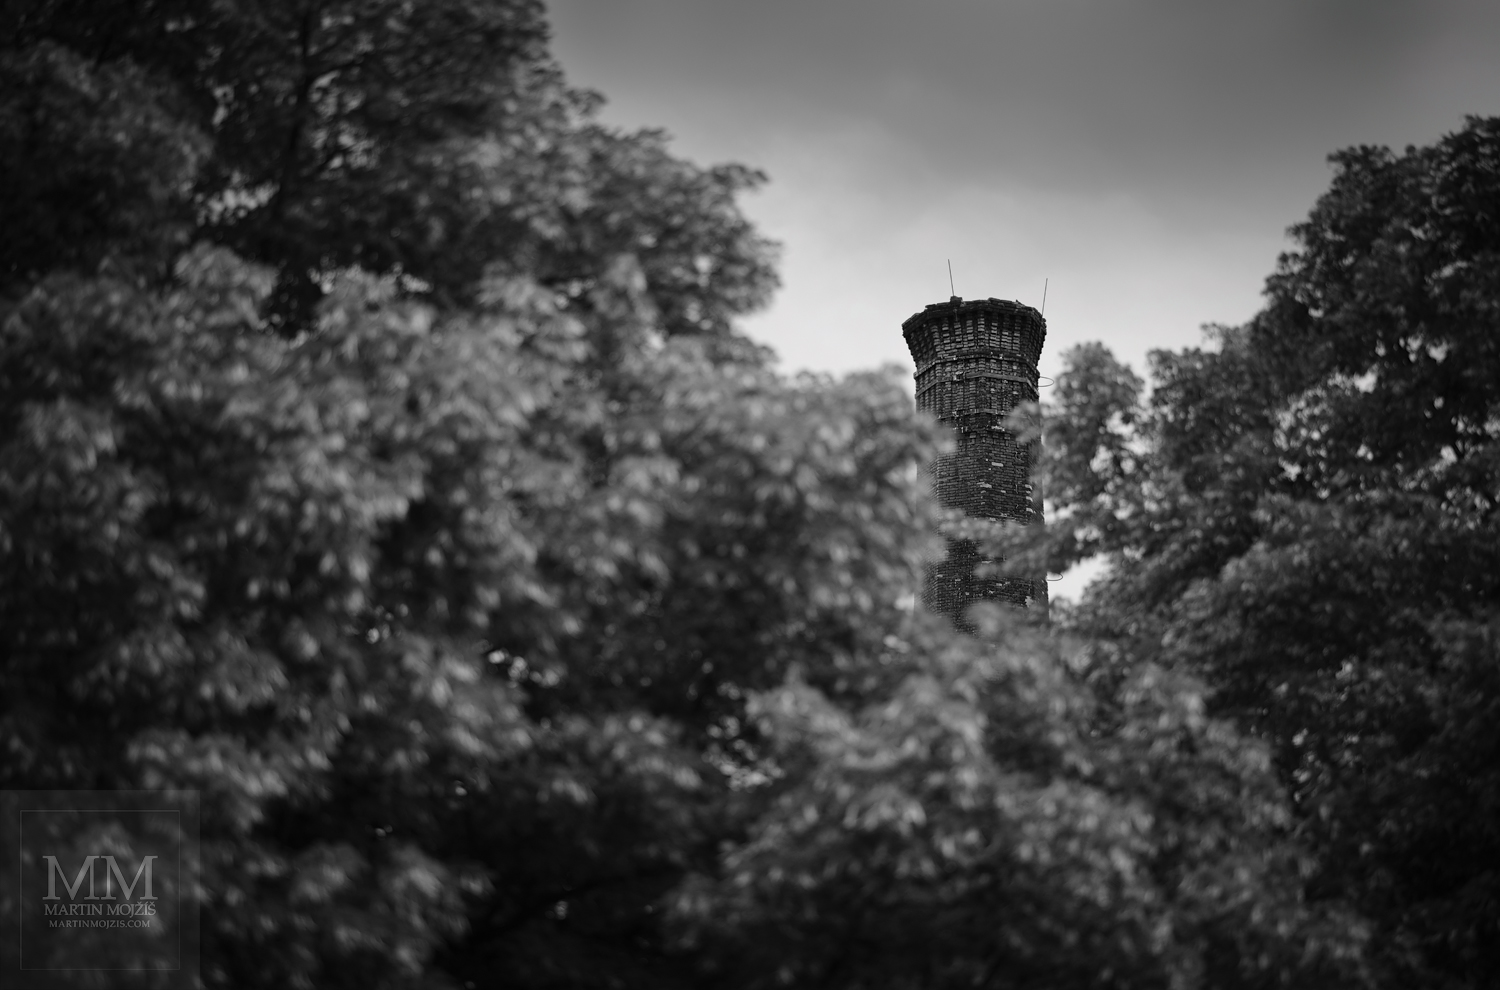 Vysoký cihlový tovární komín téměř skrytý za korunami velkých stromů. Umělecká černobílá fotografie s názvem ZA KORUNAMI STROMŮ. Fotograf Martin Mojžíš.